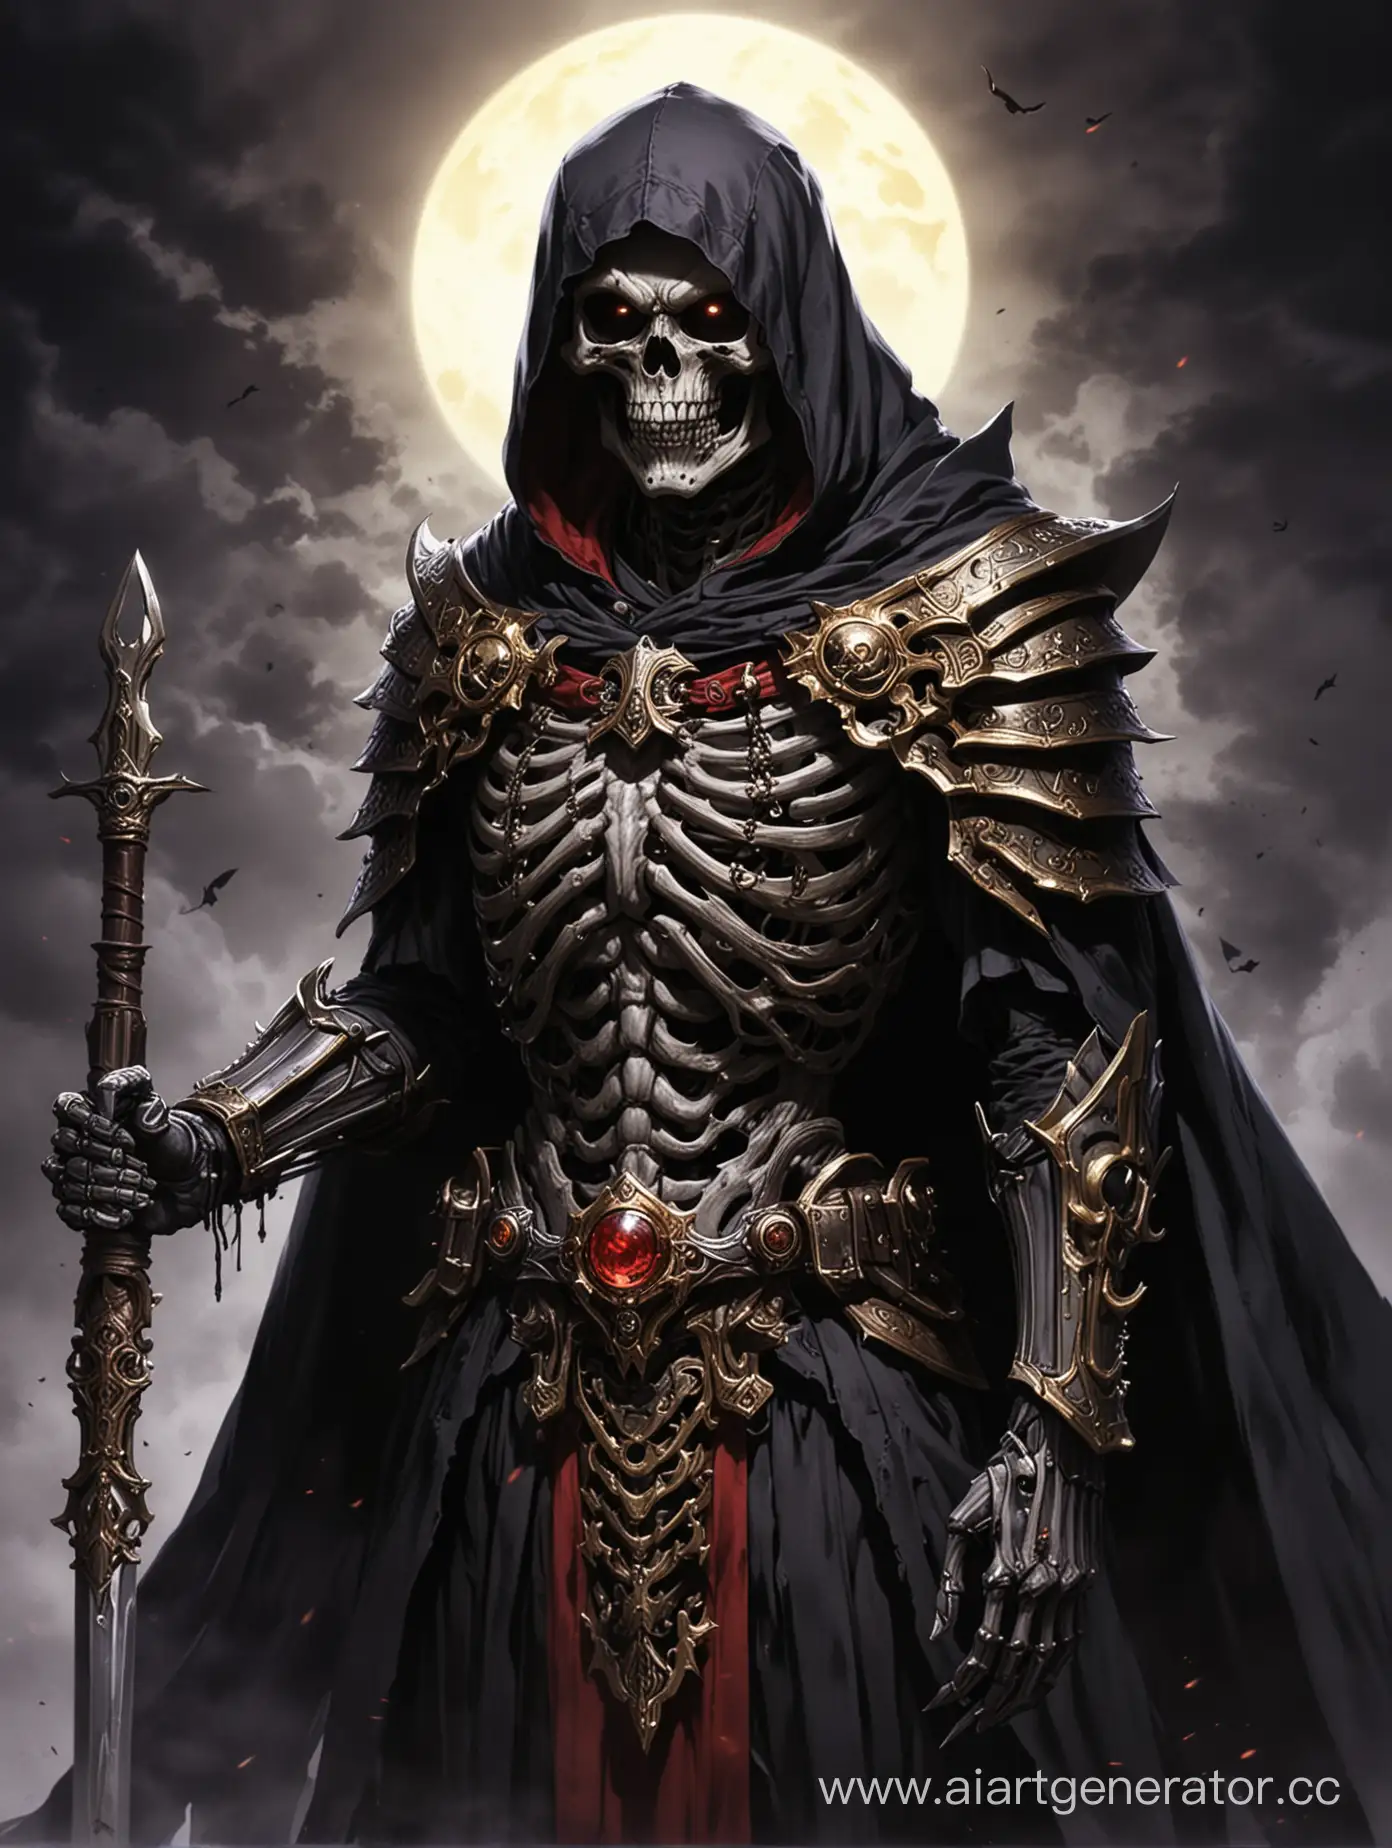 Dark-Skeleton-Ruler-Ainz-Ooal-Gown-with-Red-Orb-and-Menacing-Cloak